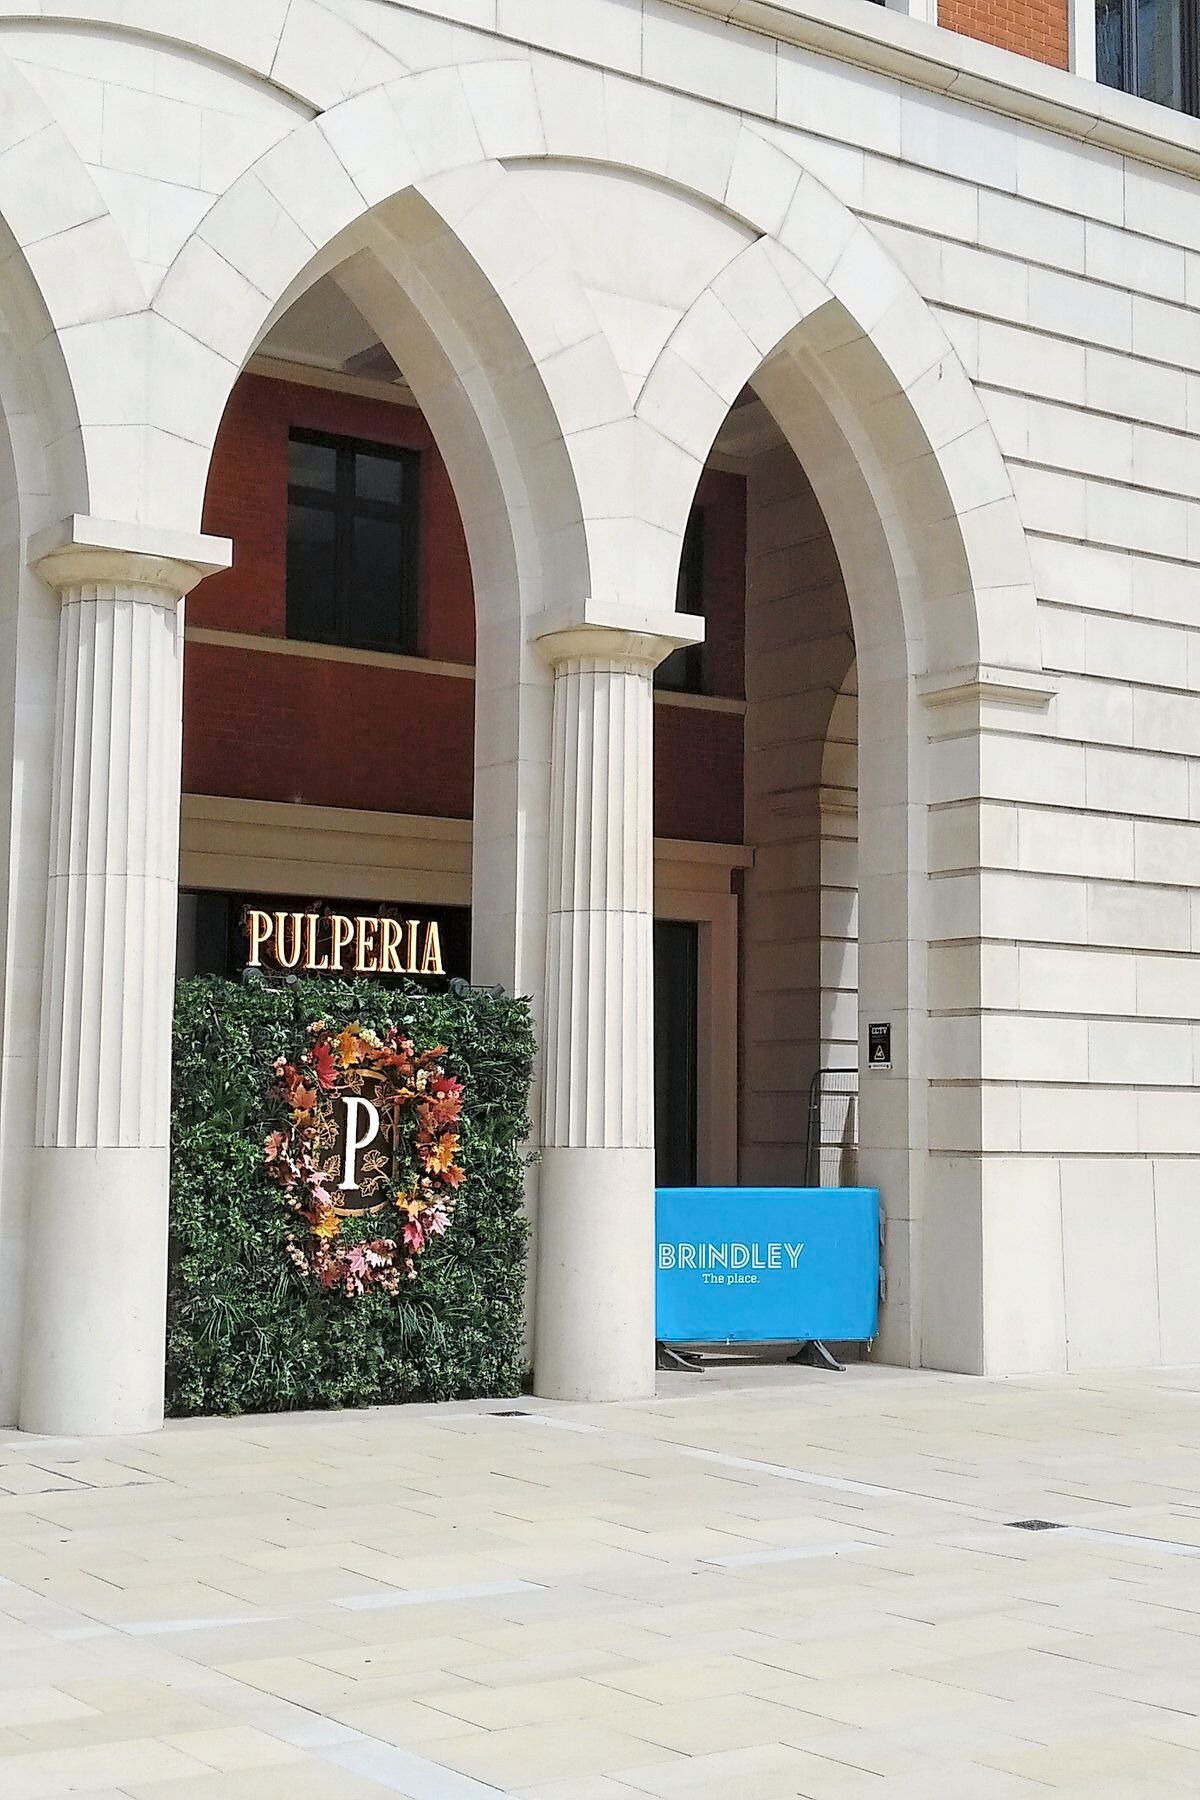 Pulperia provides a collection service